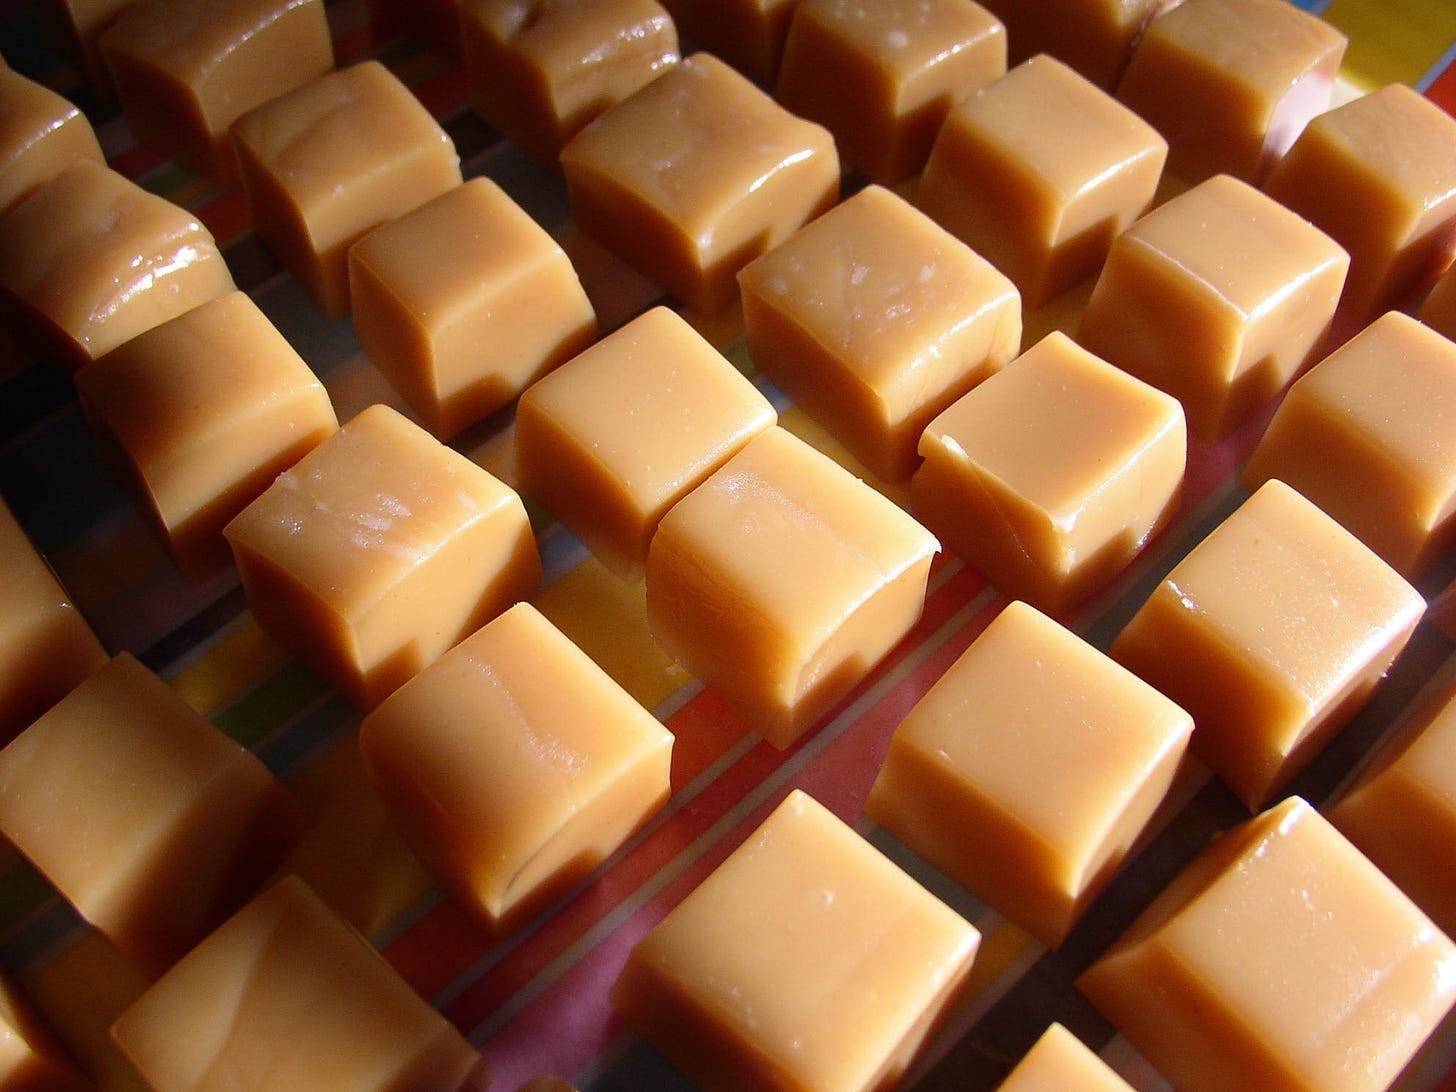 Squares of homemade caramel